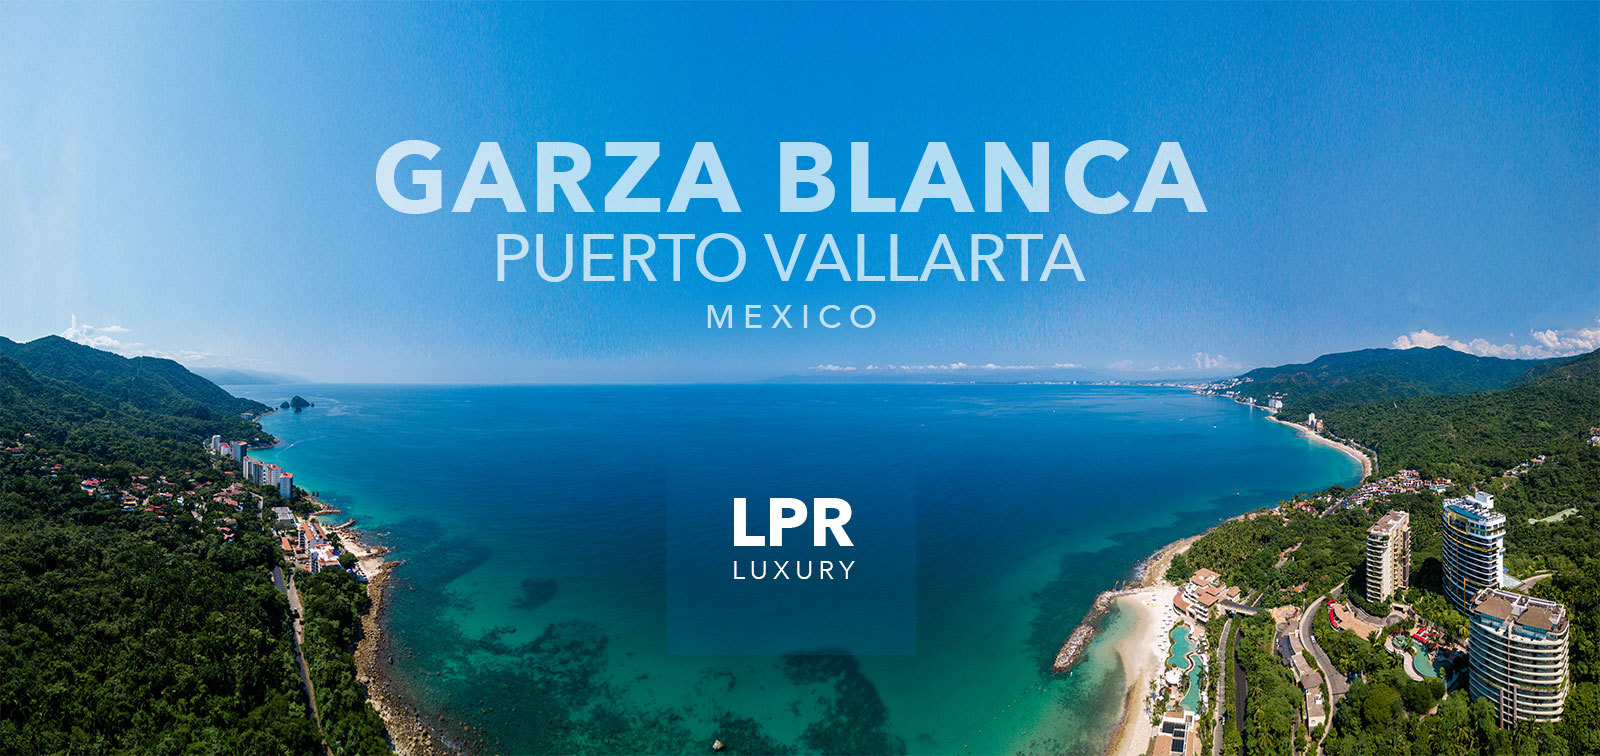 Garza Blanca - South Shore Puerto Vallarta Luxury Condominiums For Sale and Rent